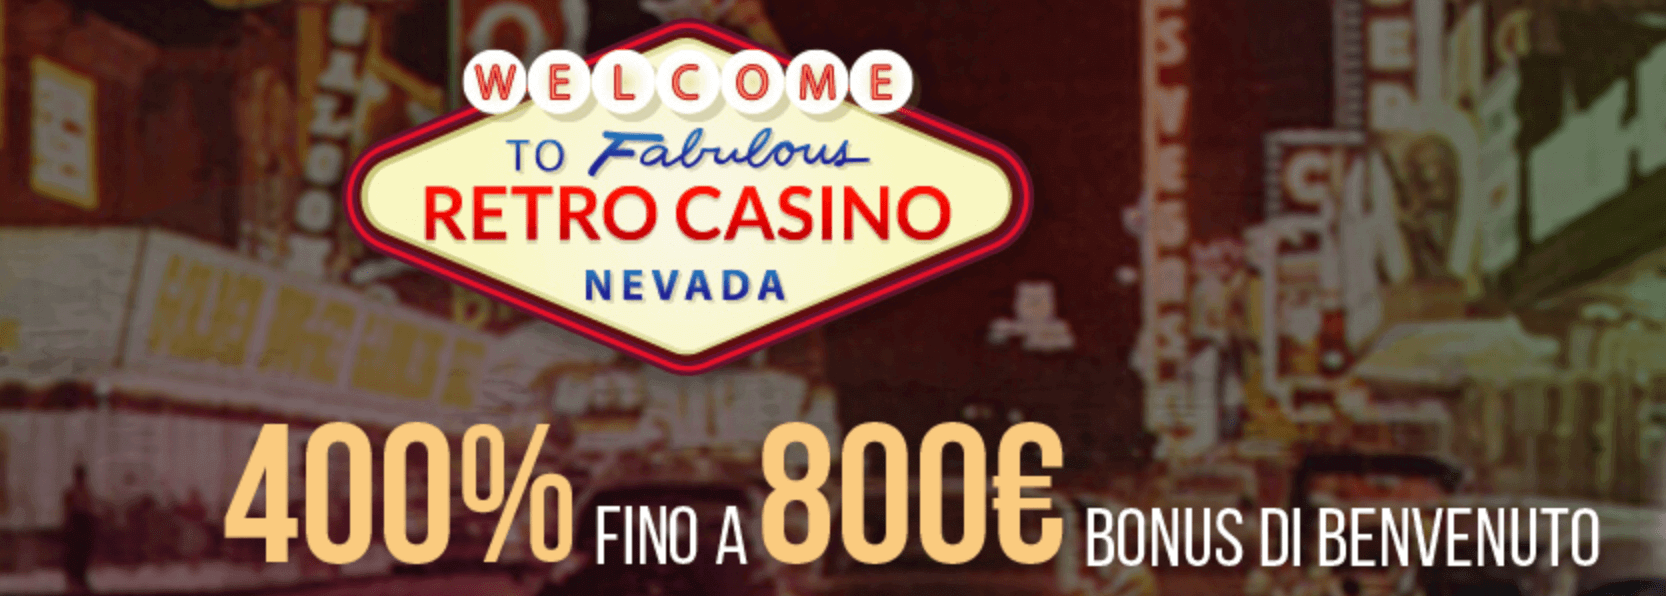 Retro Casino Bonus Benvenuto